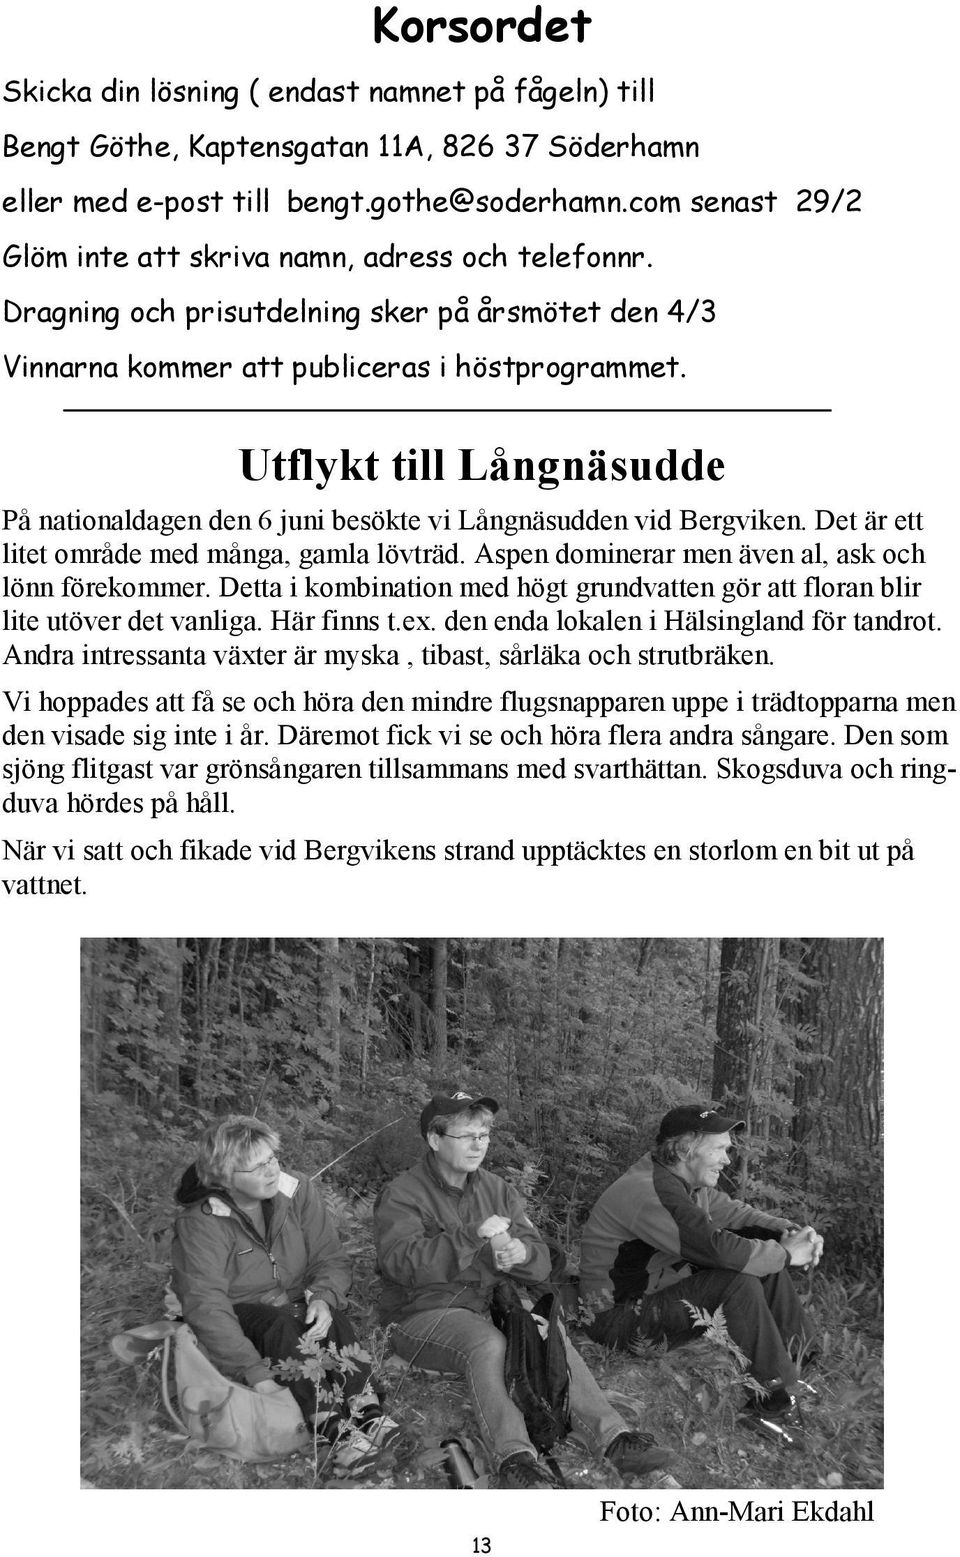 Utflykt till Långnäsudde På nationaldagen den 6 juni besökte vi Långnäsudden vid Bergviken. Det är ett litet område med många, gamla lövträd. Aspen dominerar men även al, ask och lönn förekommer.